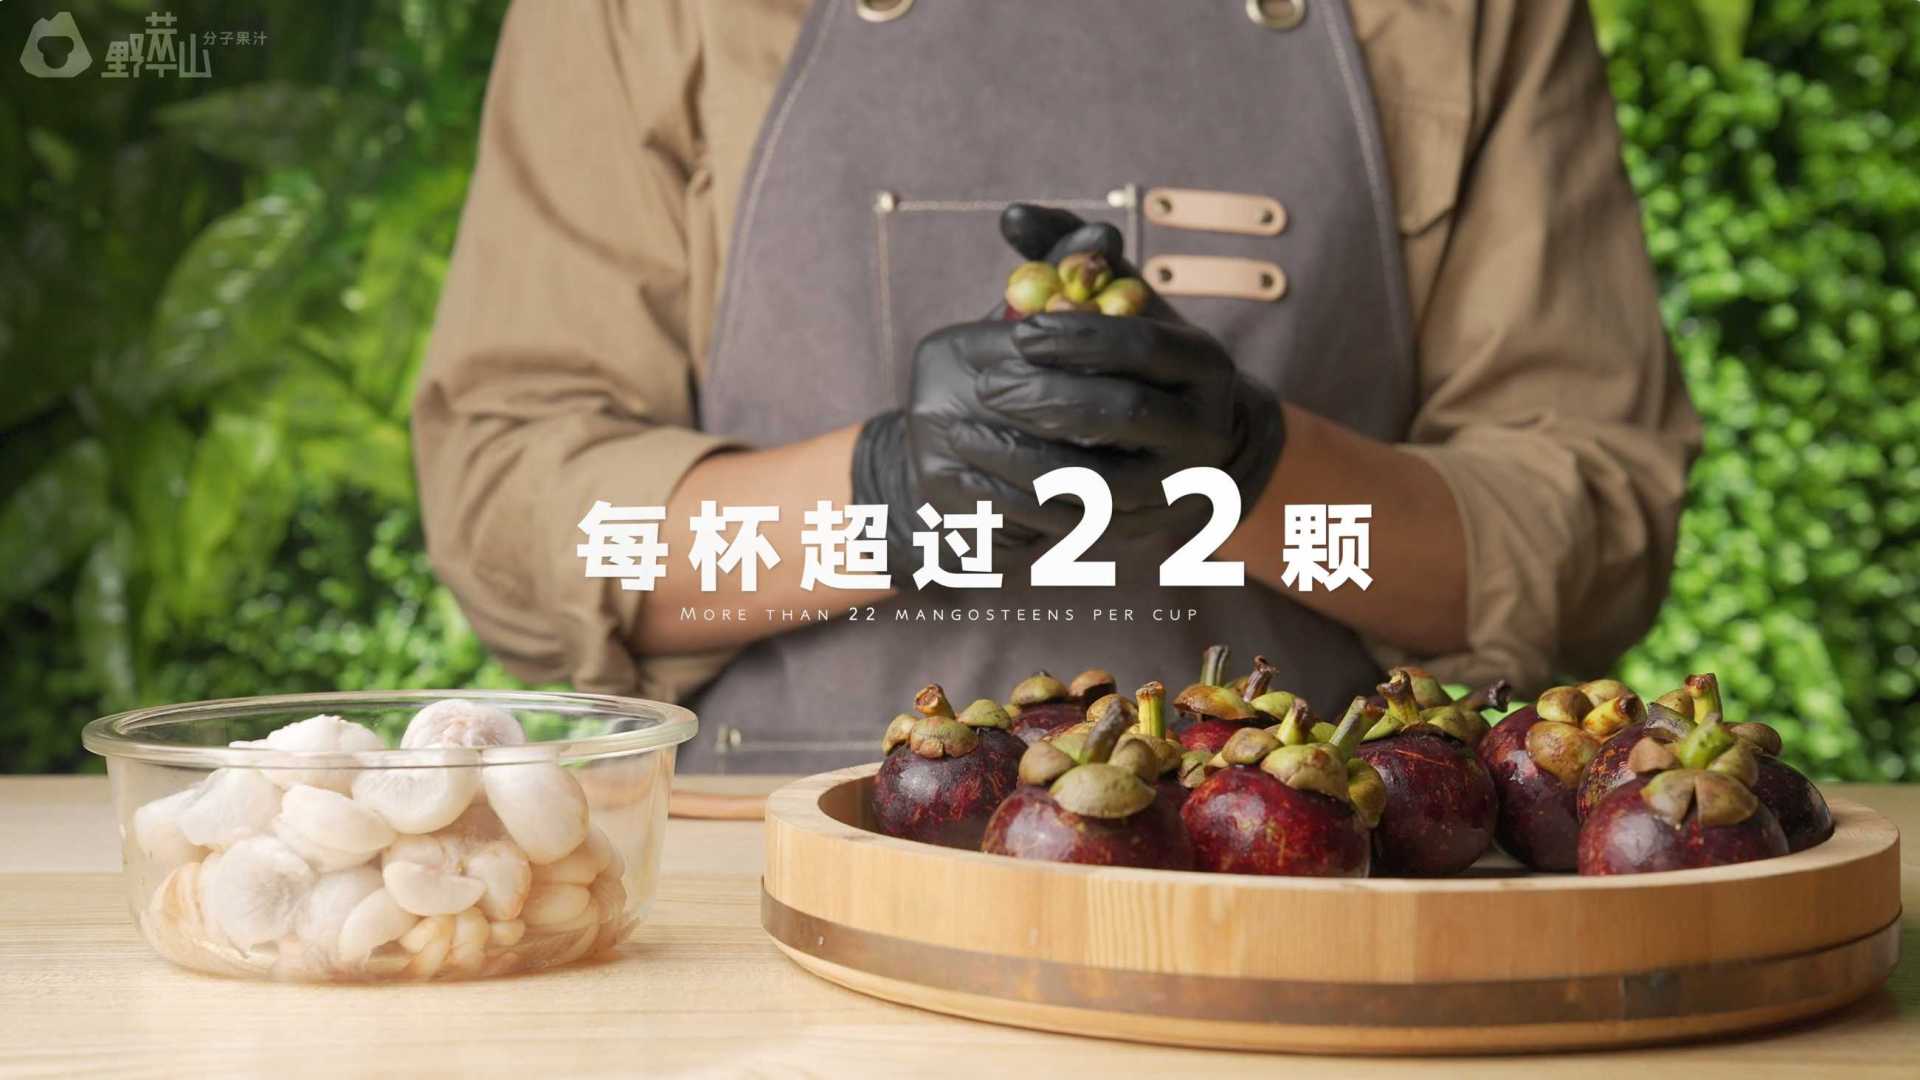 野萃山 「22颗+山竹汁 」— 全网首条山竹饮品广告